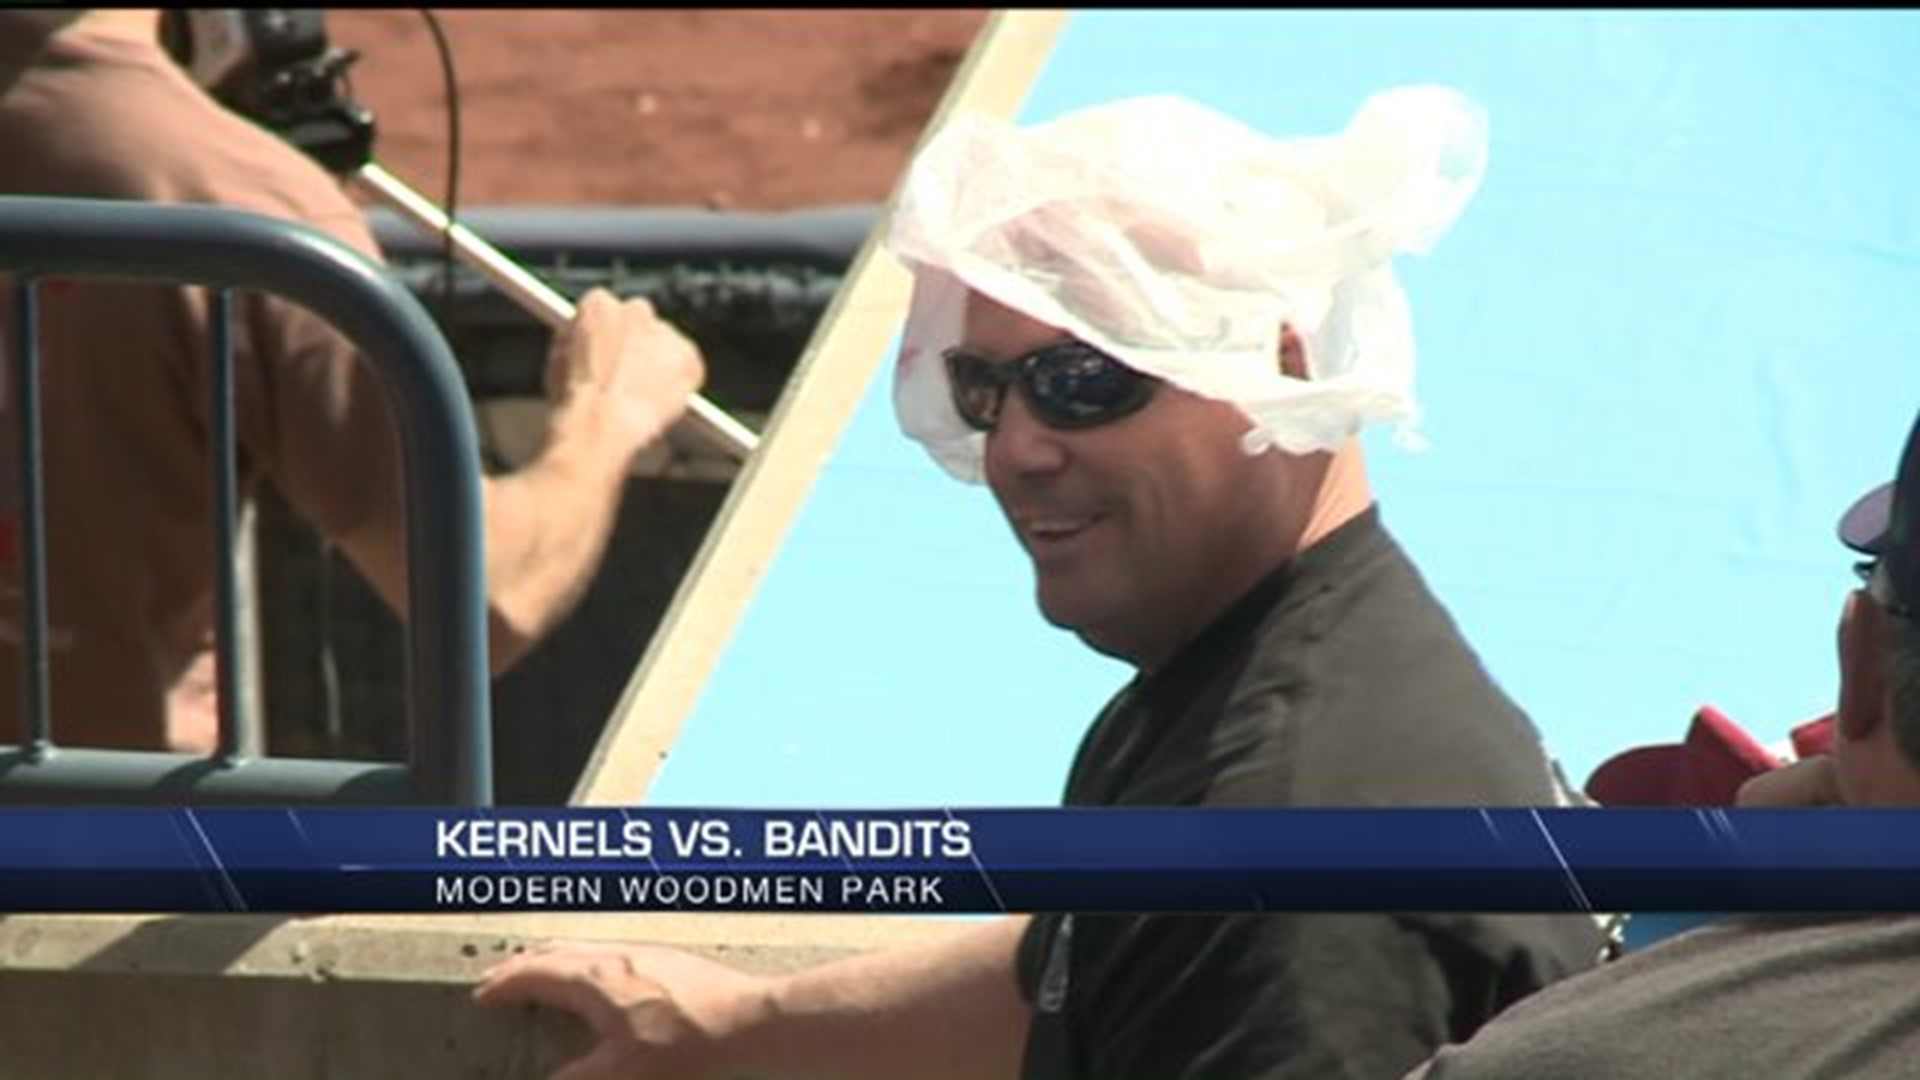 Kernels shutout the Bandits